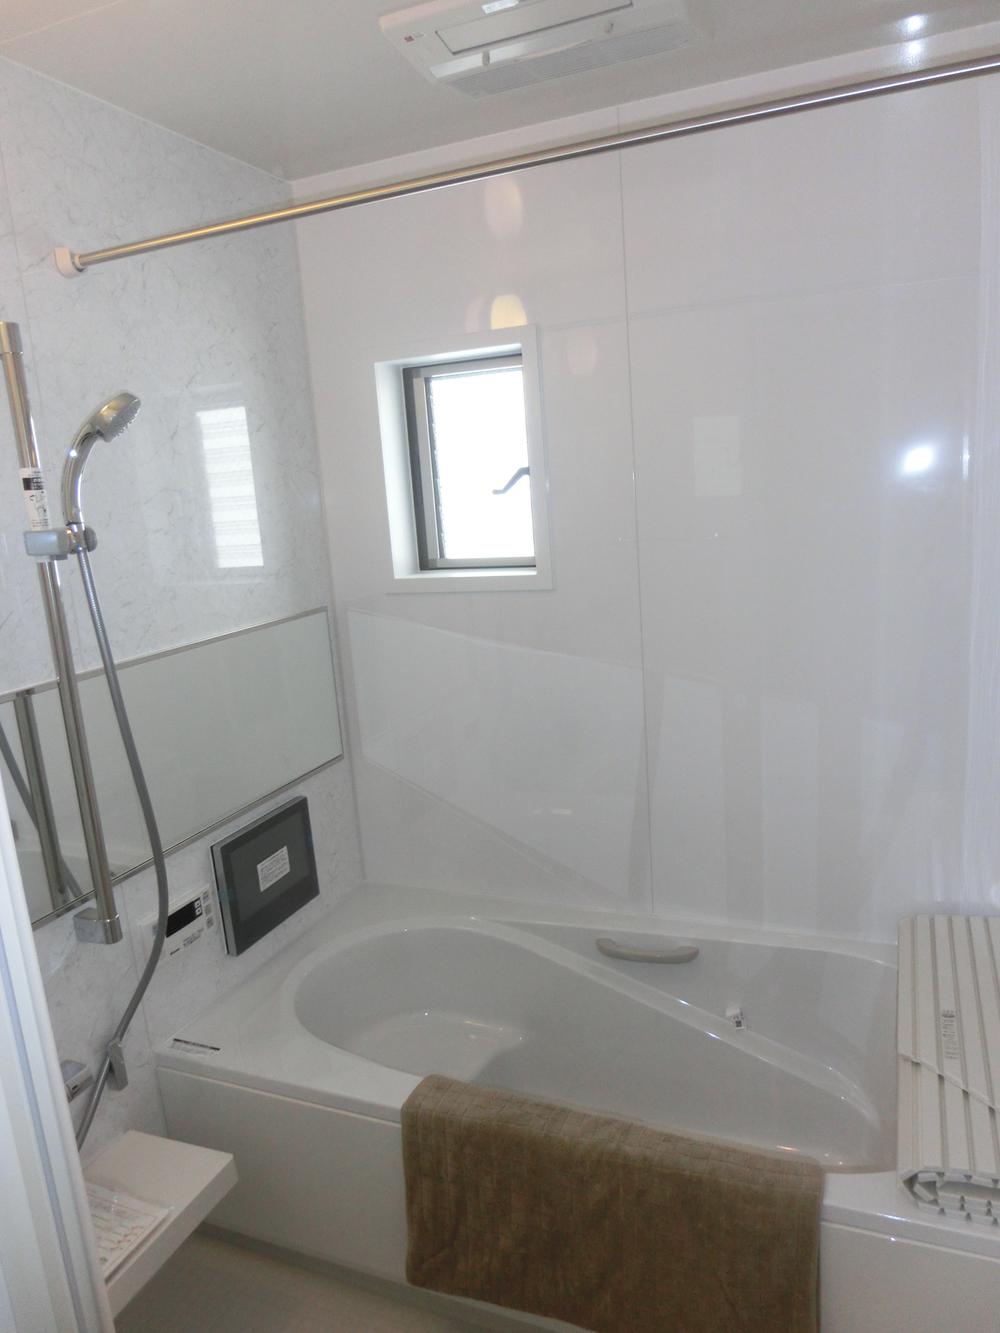 Same specifications photo (bathroom). Bathroom TV, Bathroom with mist Kawakku